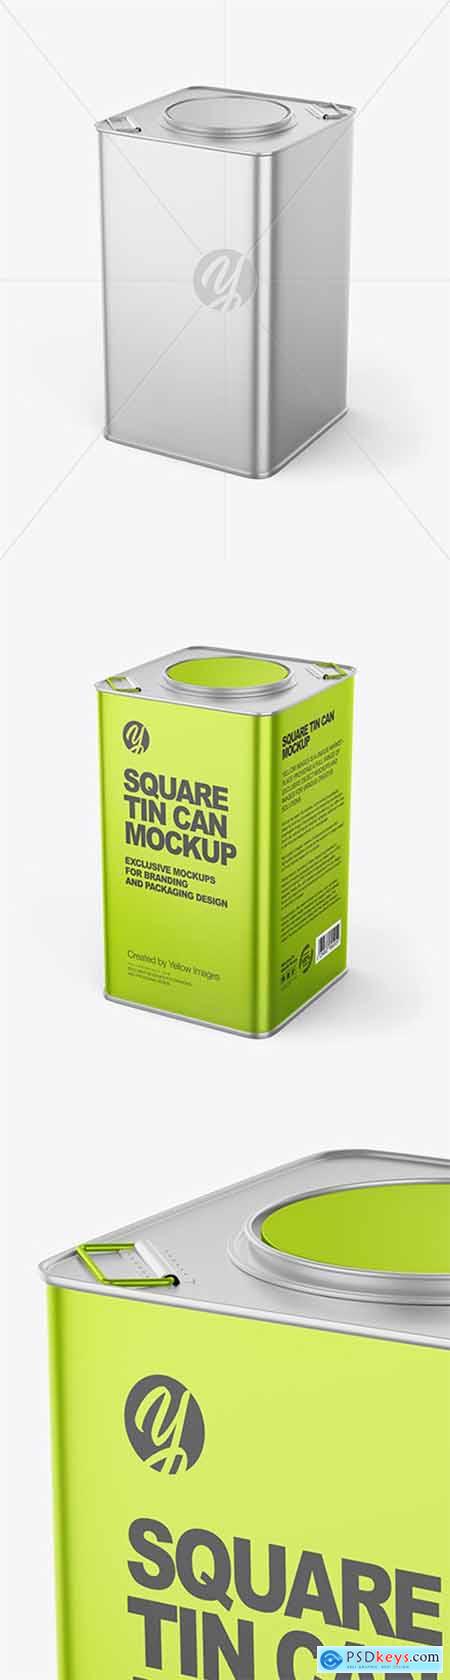 Metallic Square Tin Can Mockup 63399